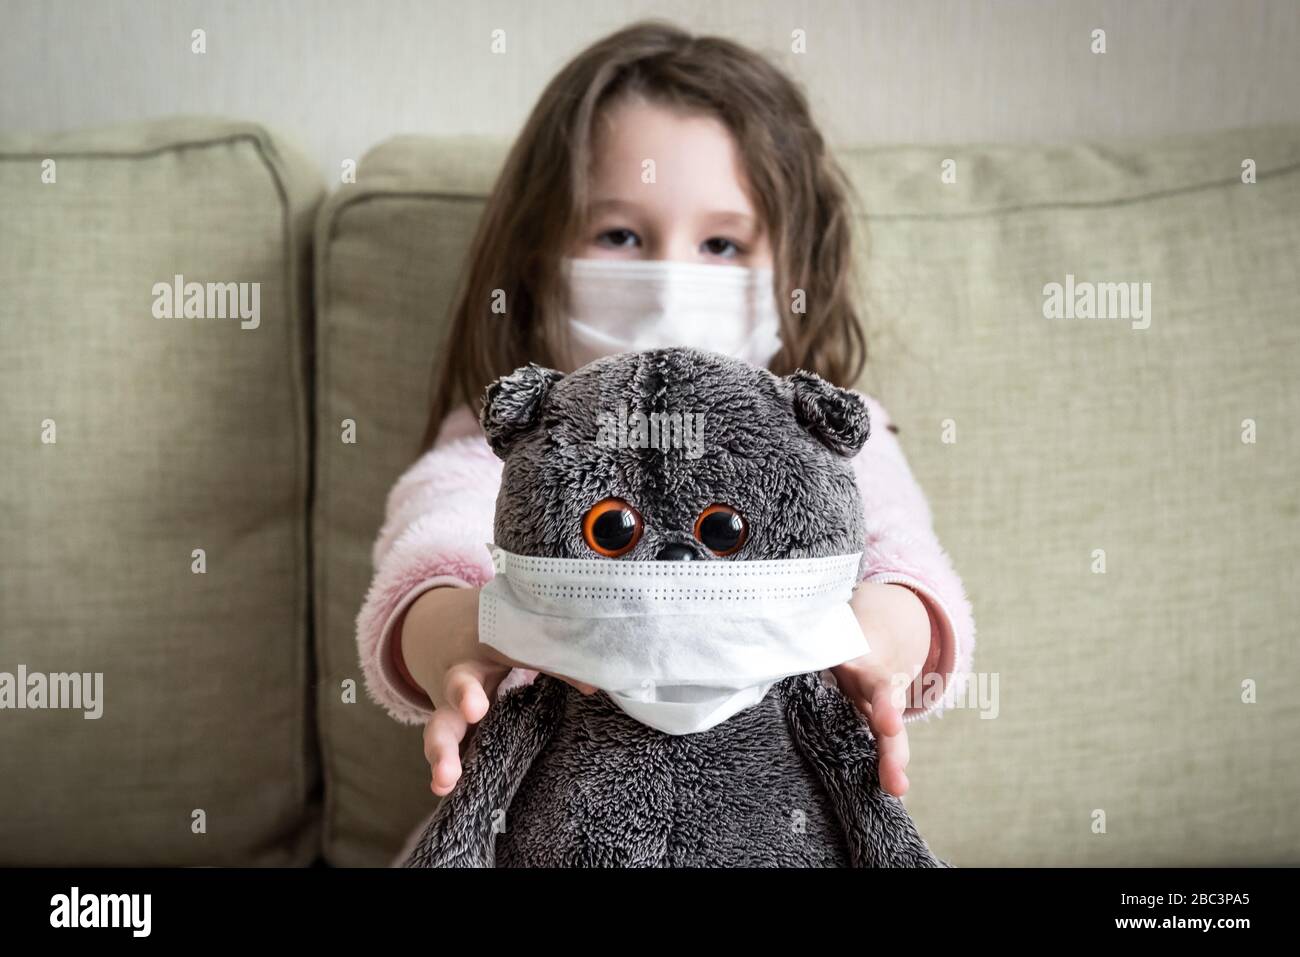 Concetto di quarantena per coronavirus, la bambina gioca con il giocattolo a casa durante la pandemia di COVID-19. Capretto in maschera medica per la protezione al virus corona indoor Foto Stock